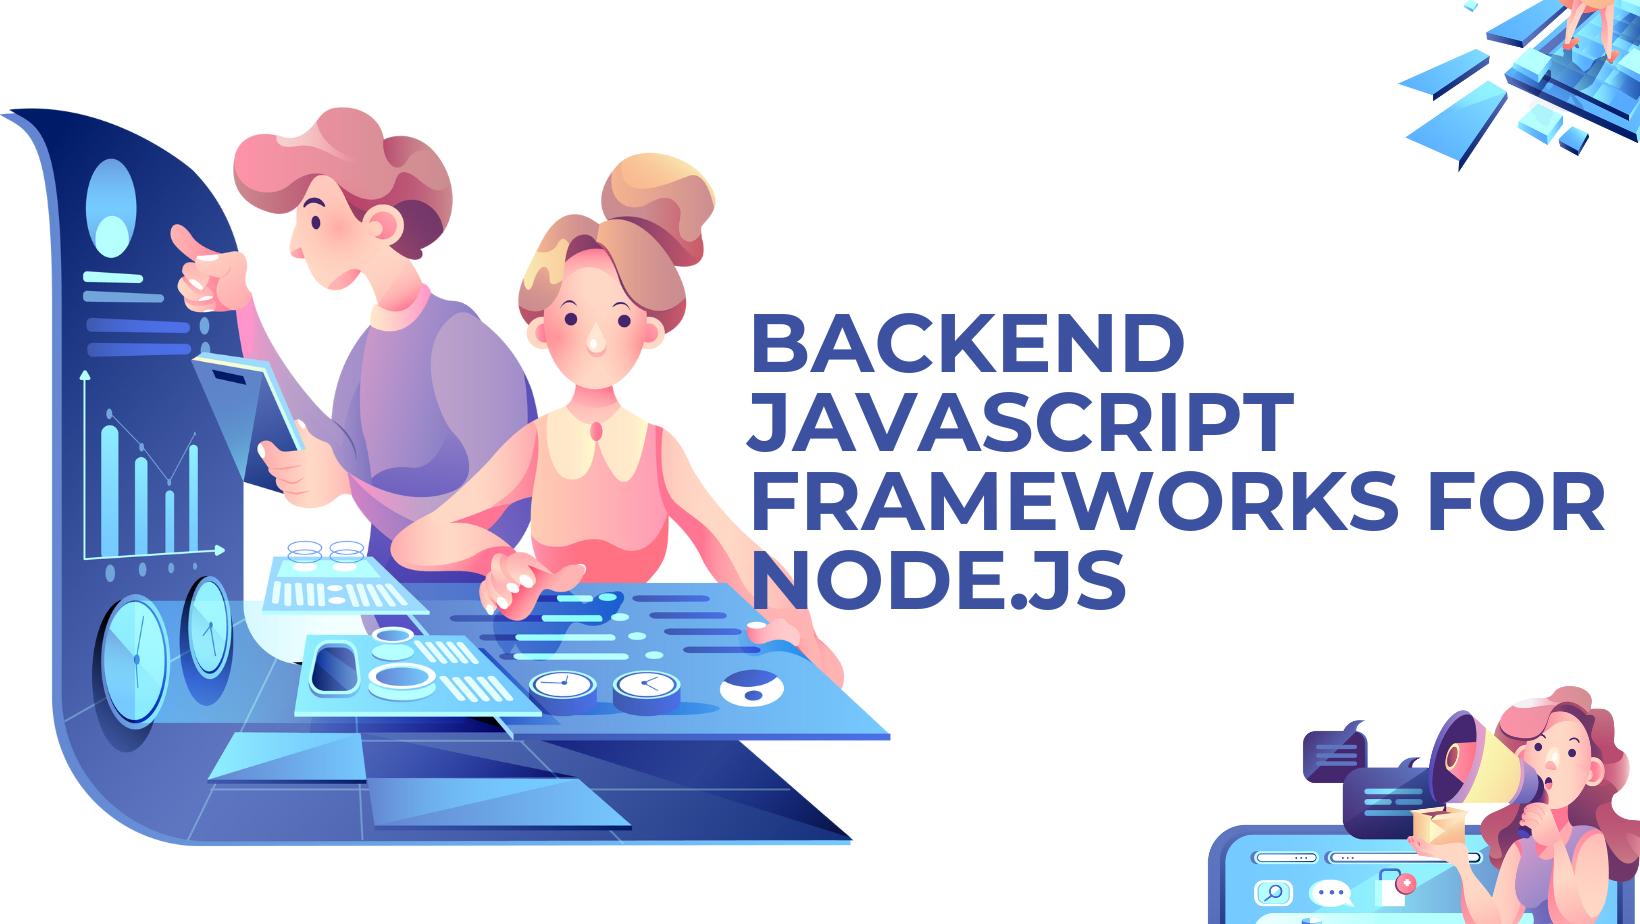 Backend JavaScript Frameworks for Node.js